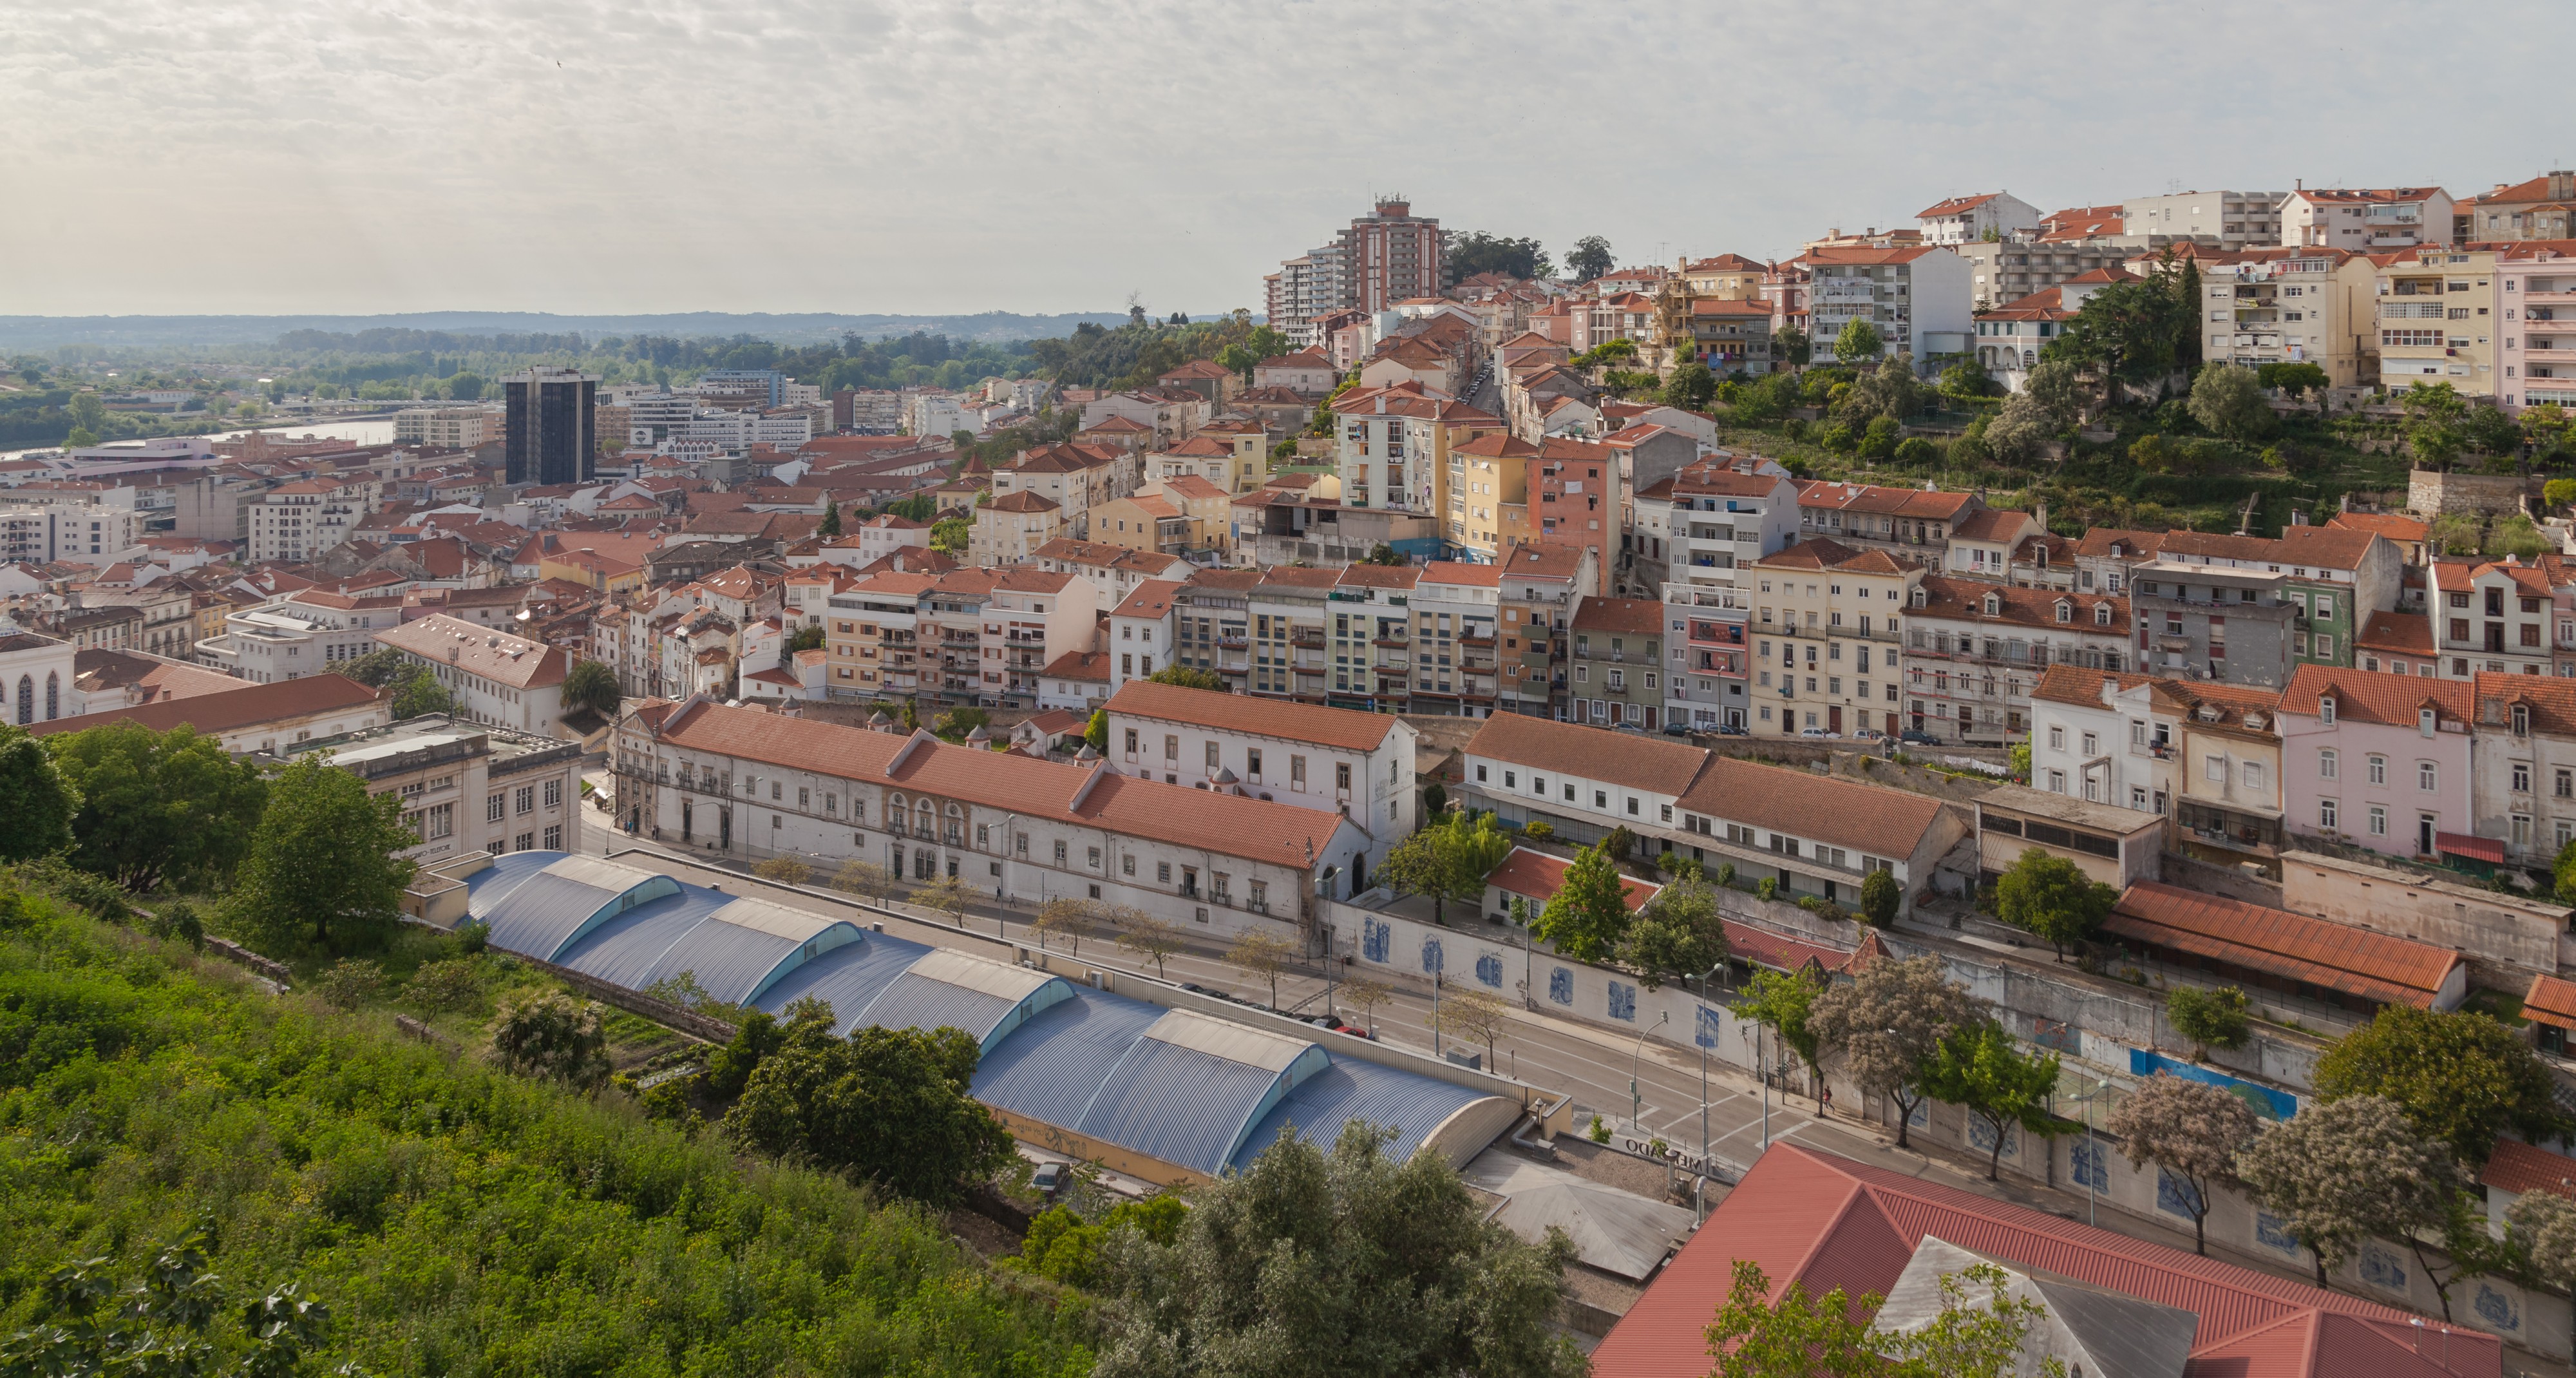 Vista de Coímbra desde la Universidad, Portugal, 2012-05-10, DD 03